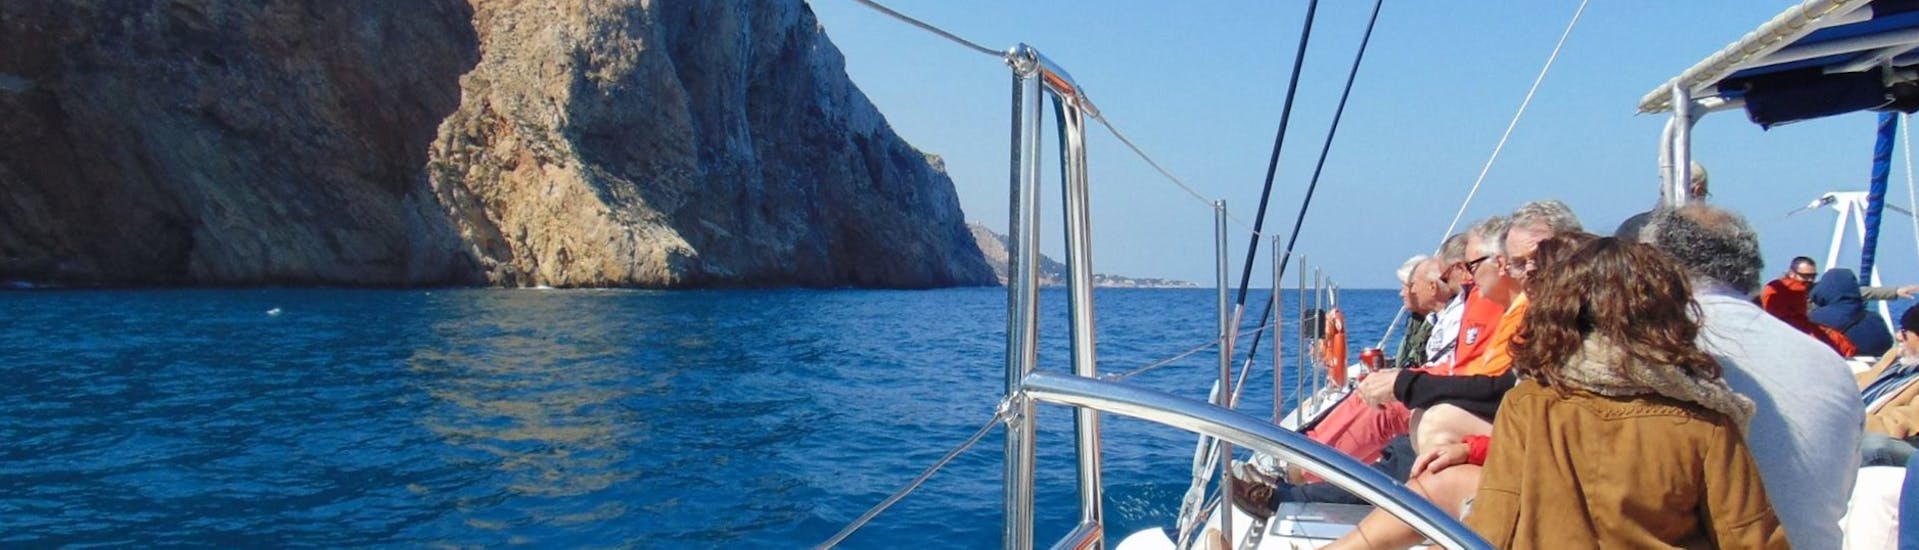 I partecipanti si divertono a bordo di un catamarano a vela ecologico durante un'escursione in barca a vela lungo la baia di Malaga con Mundo Marino Costa del Sol.